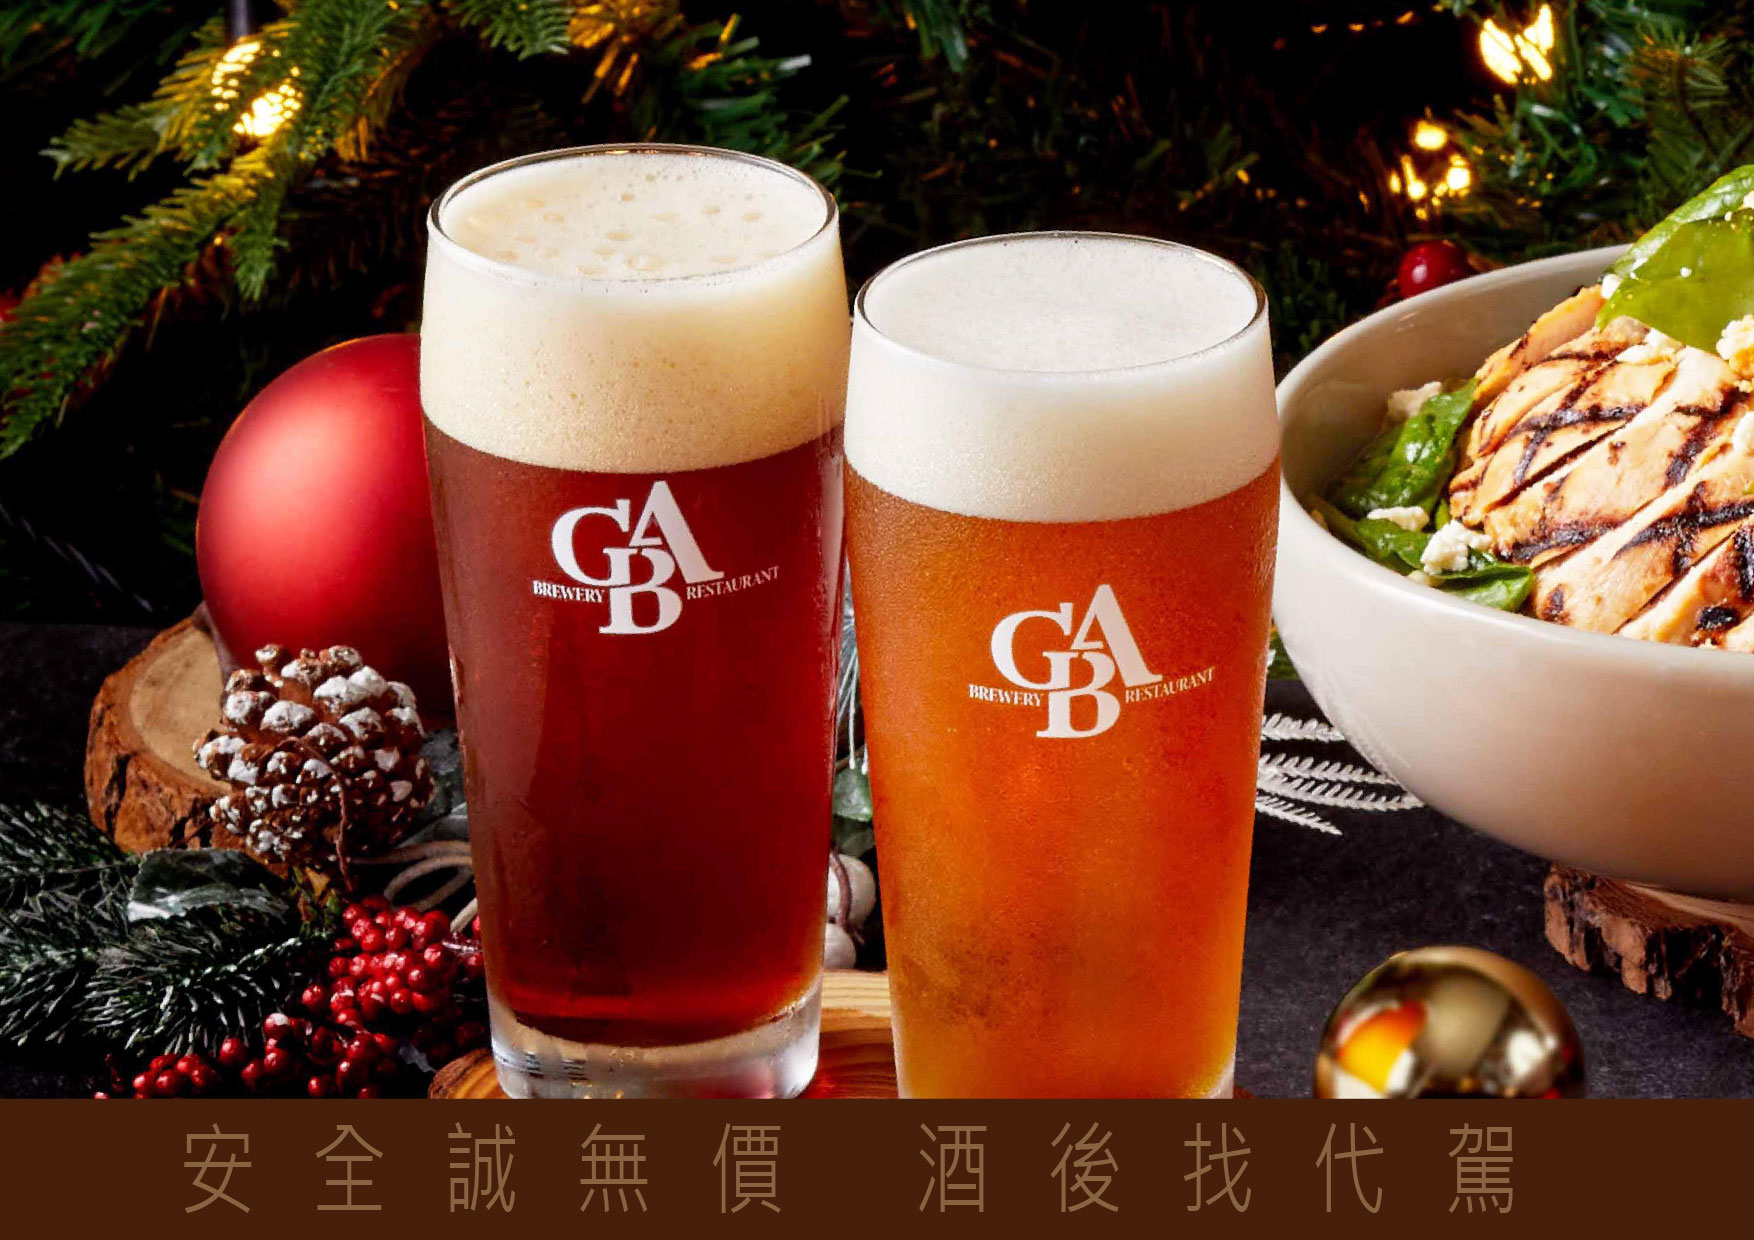 吉比鮮釀餐廳於感恩節當天，舉辦一日限定的啤酒暢飲日活動